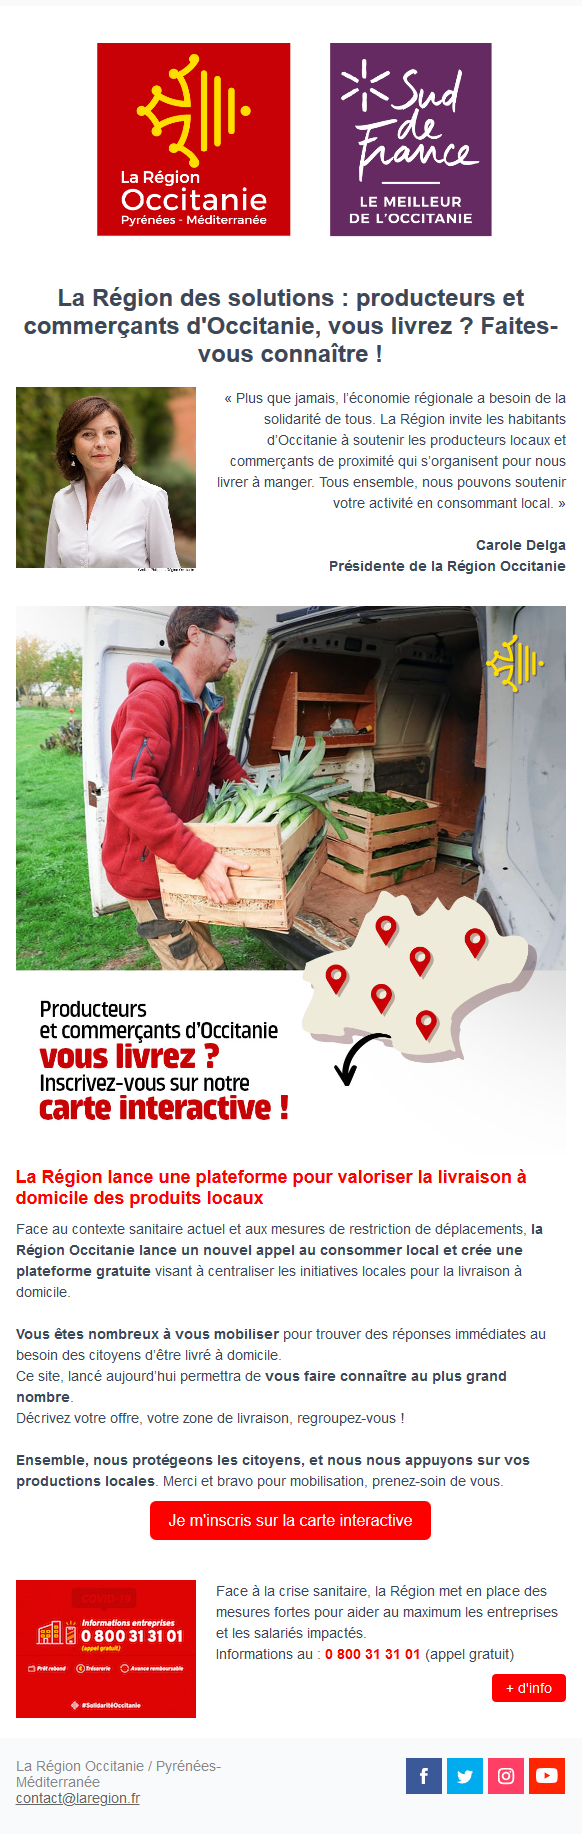 Message dinformation de La Région Occitanie sur la livraison de produits locaux à domicile